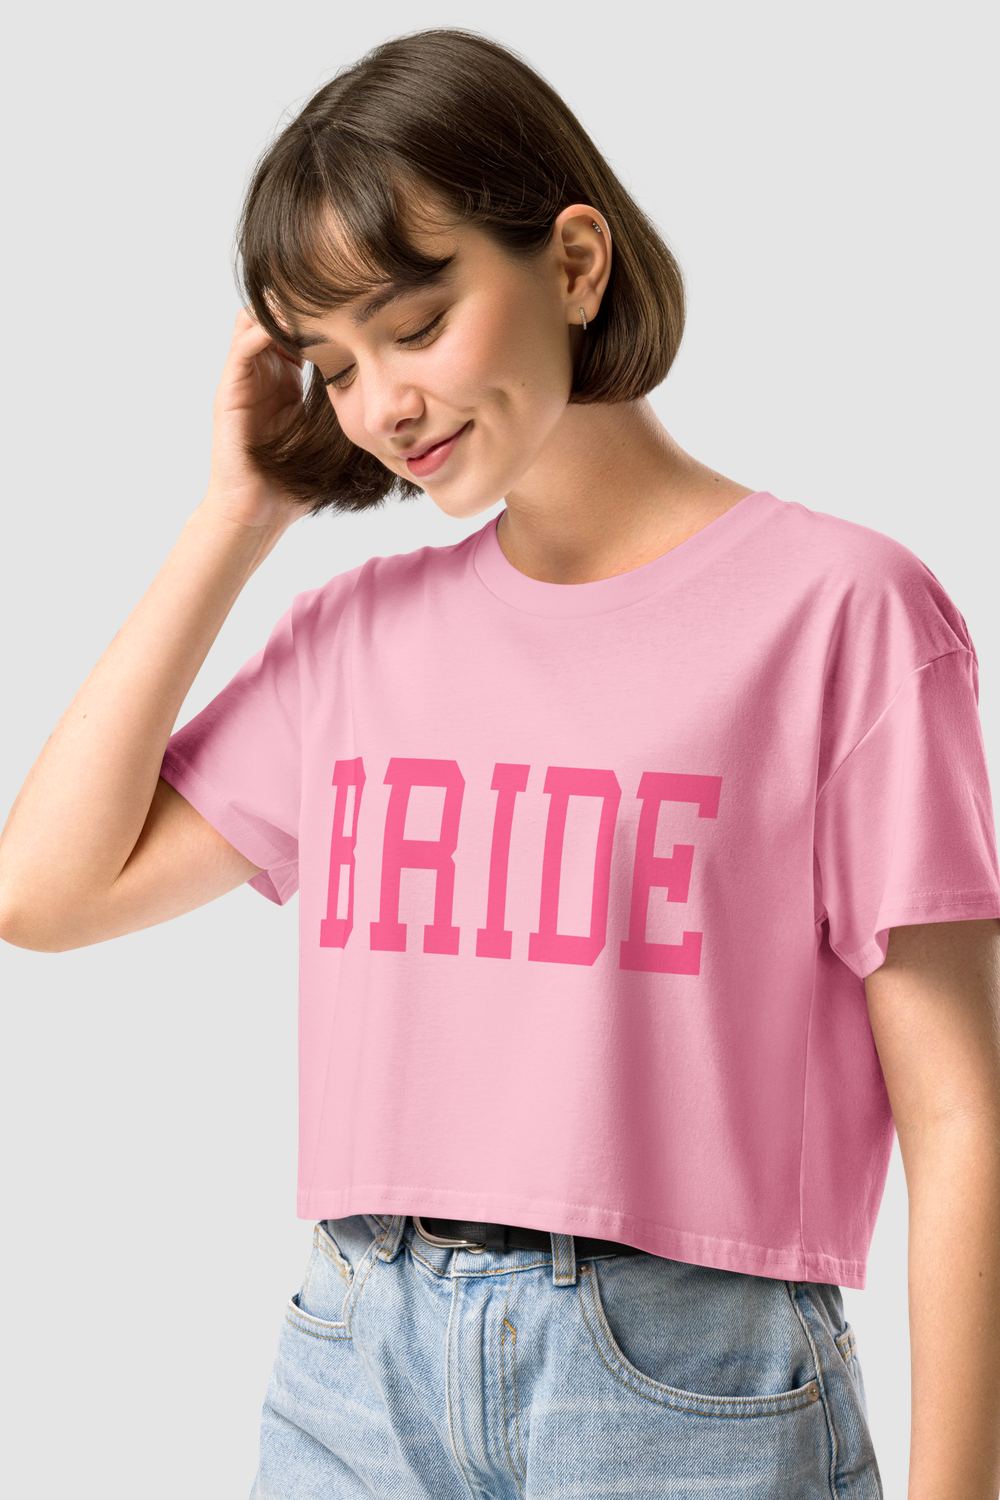 Big Bride Text Women's Relaxed Crop Top T-Shirt